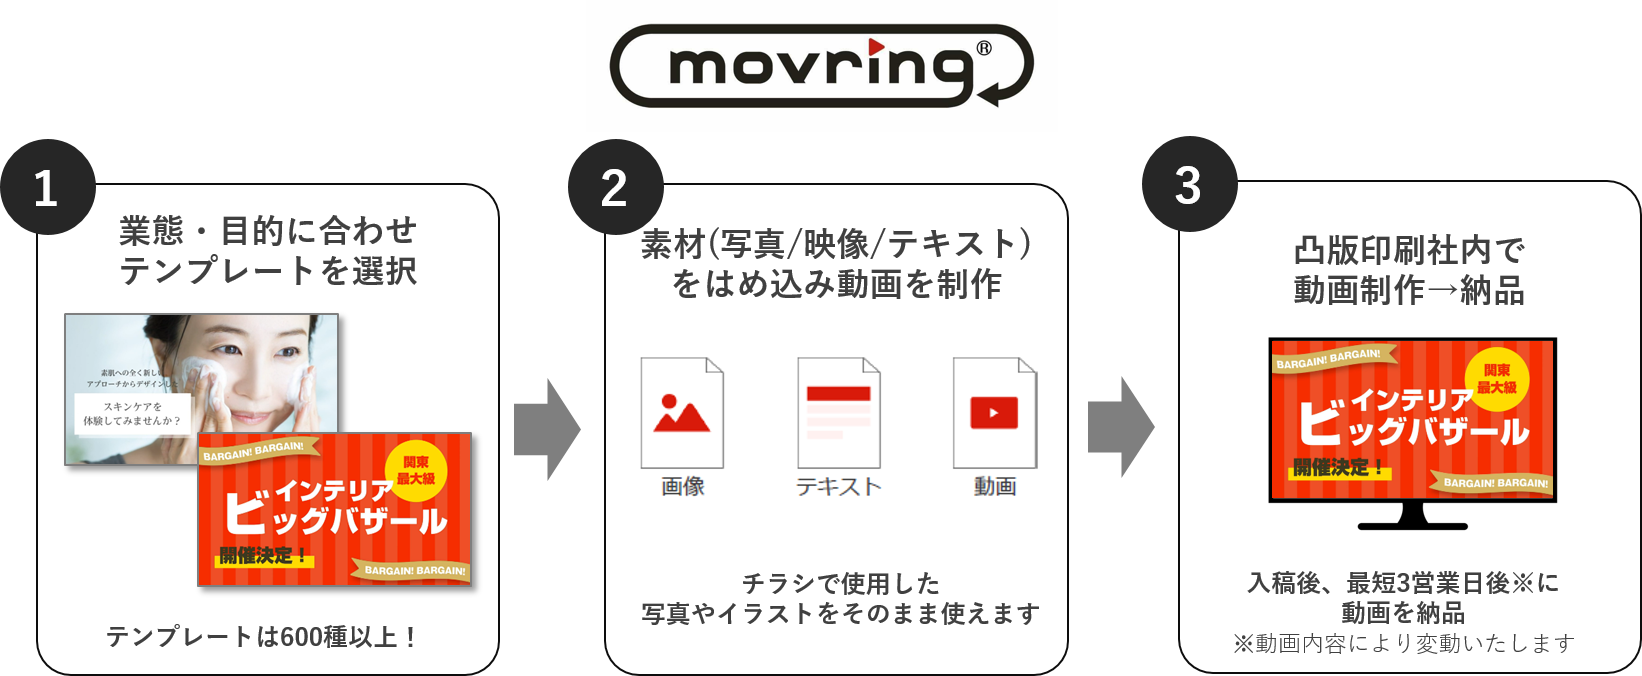 動画コミュニケーションサービス「movring （モブリン）」について